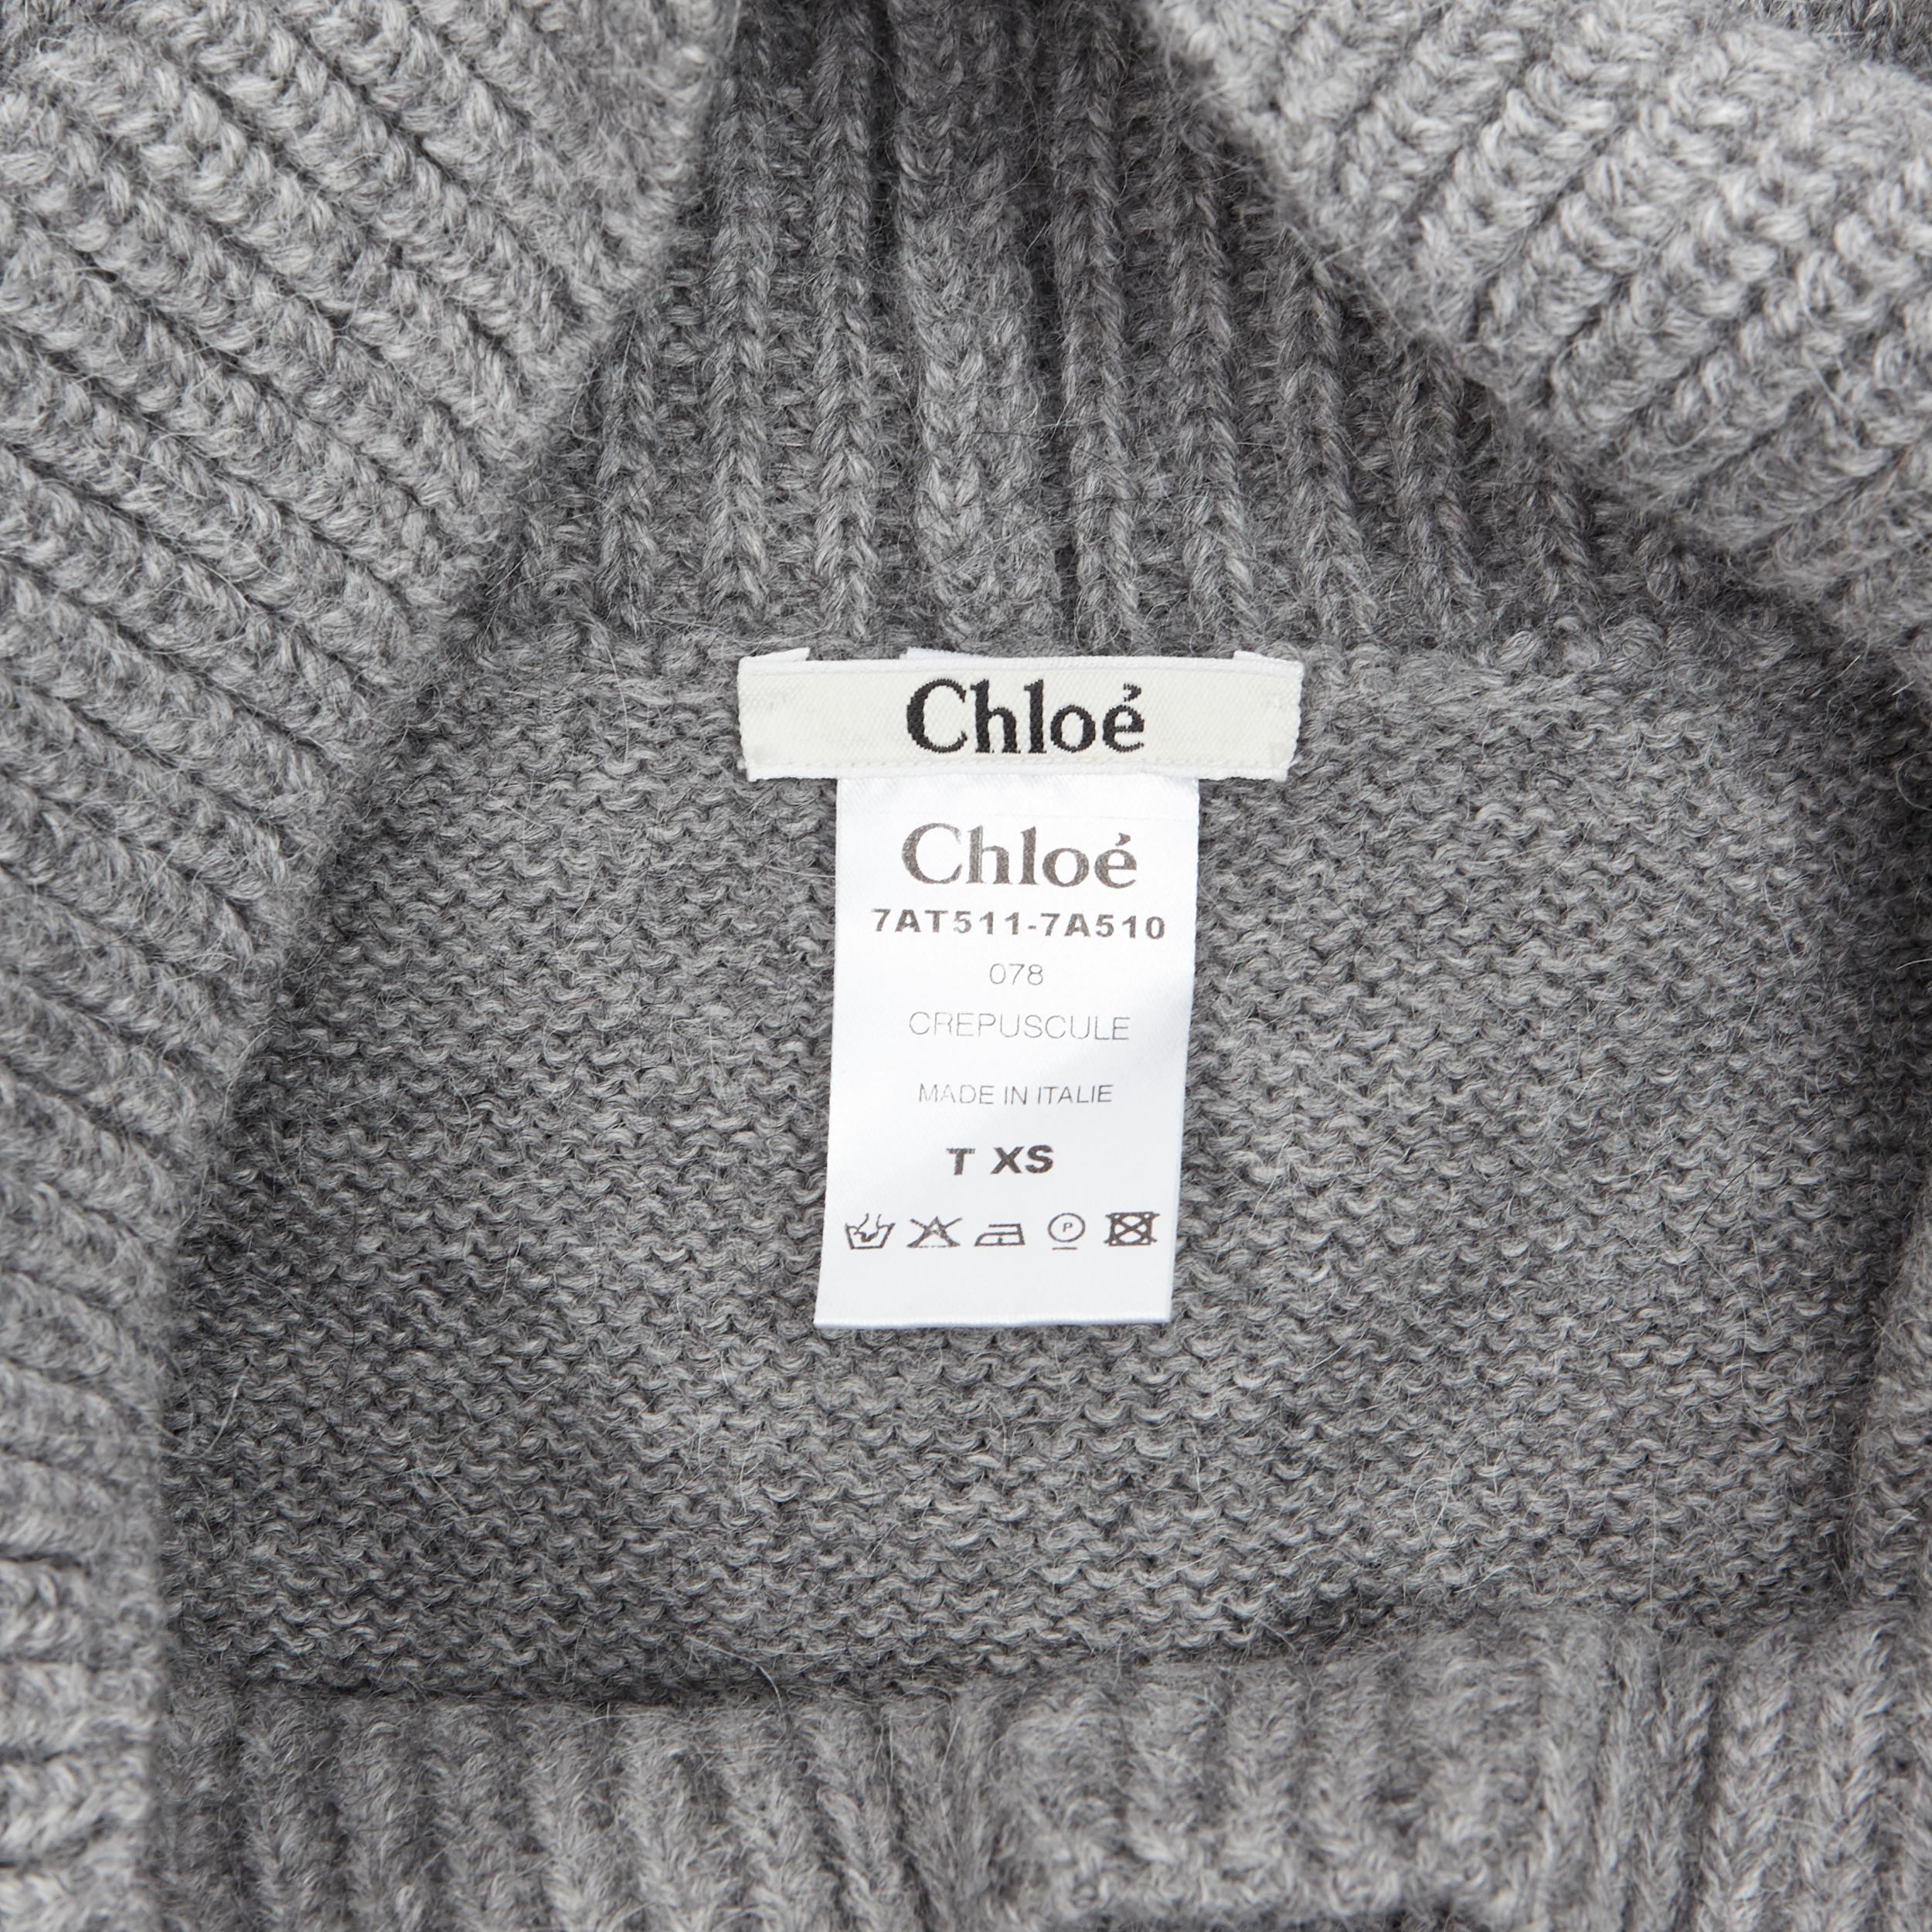 CHLOE alpaca wool grey open cowl neck long sleeve sweater dress XS 4